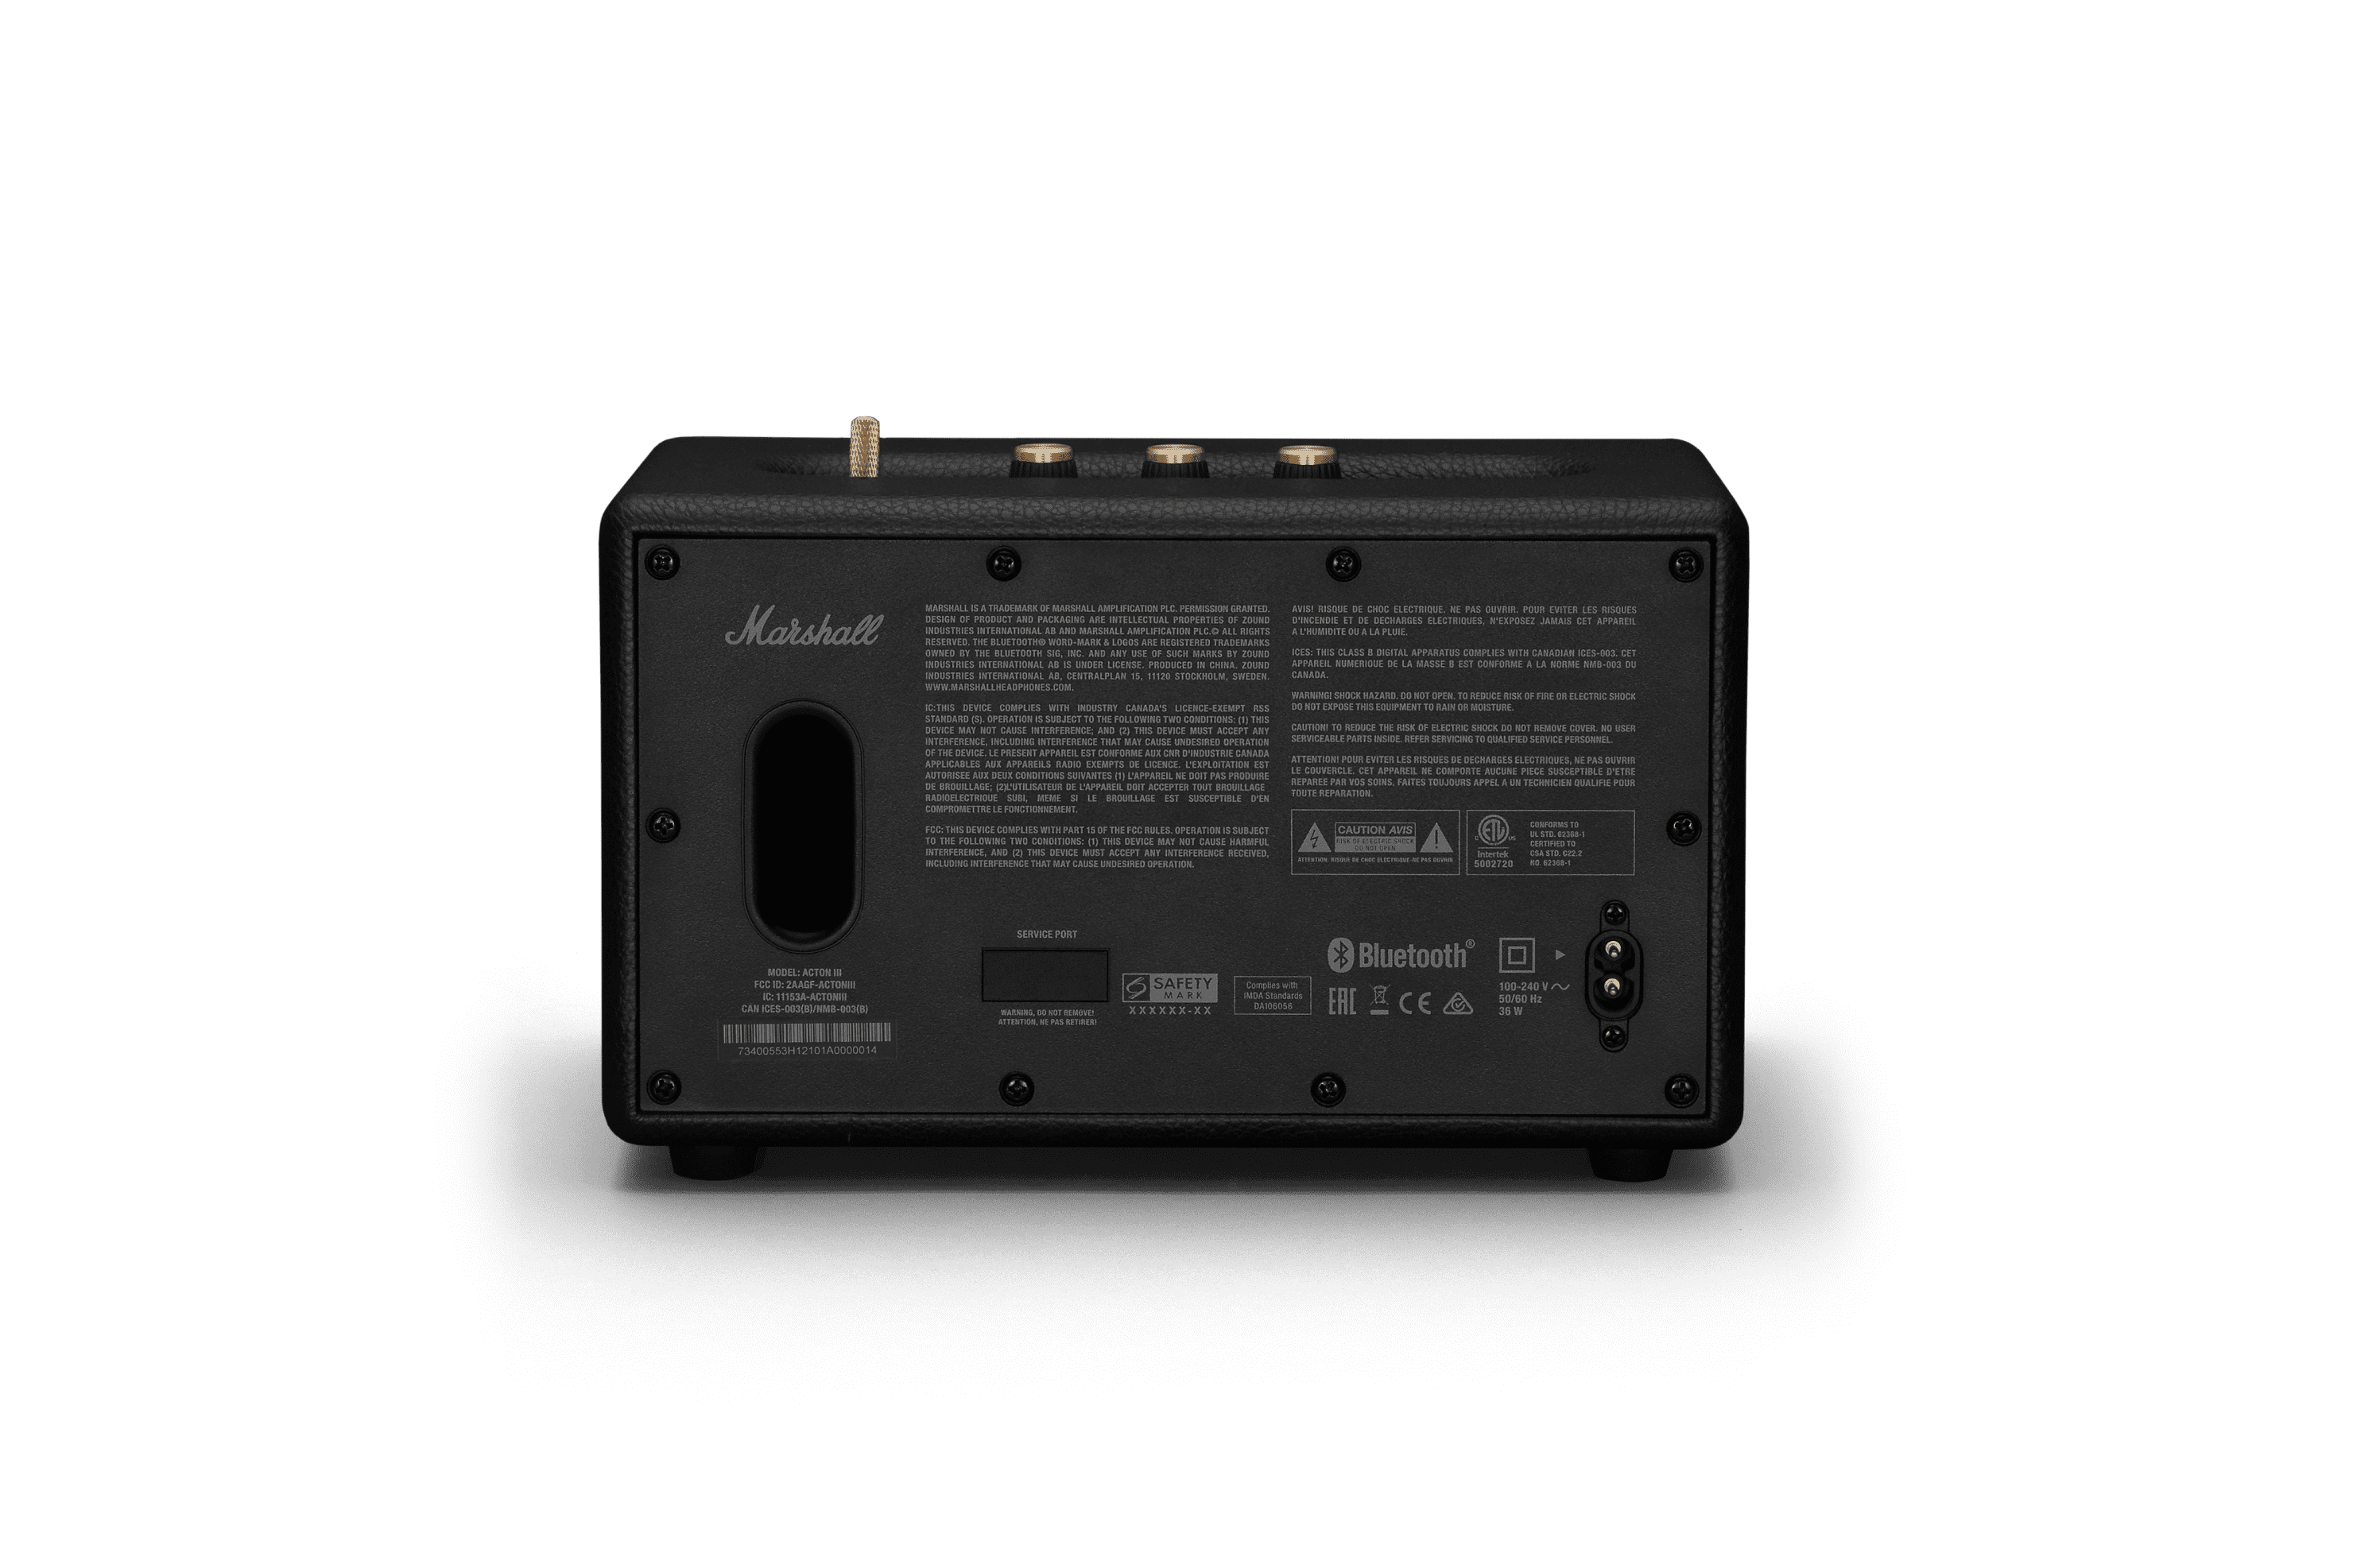 Marshall Acton III Home Bluetooth Speaker User Manual